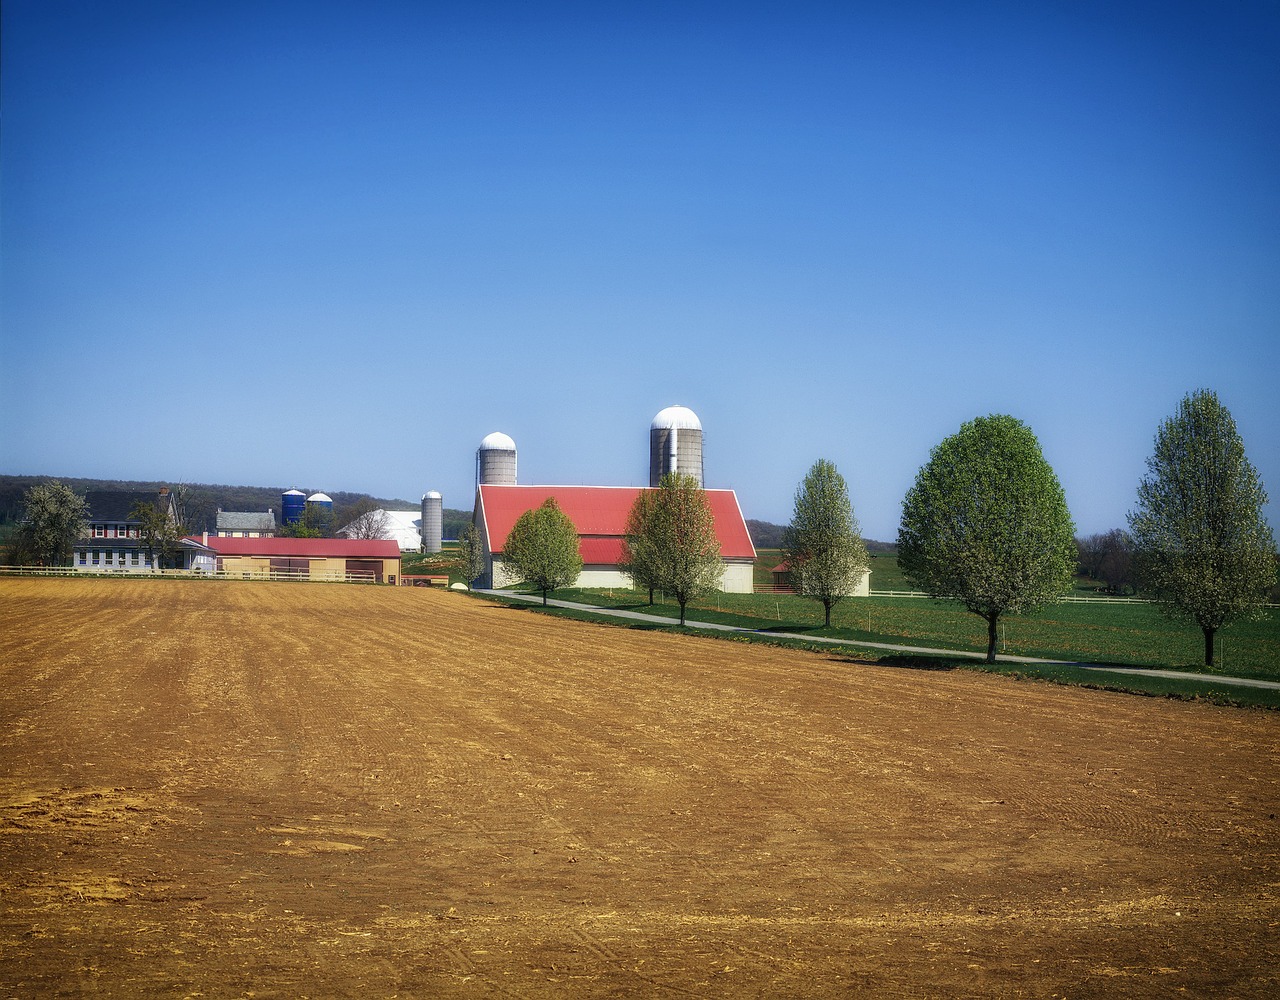 pennsylvania landscape scenic free photo